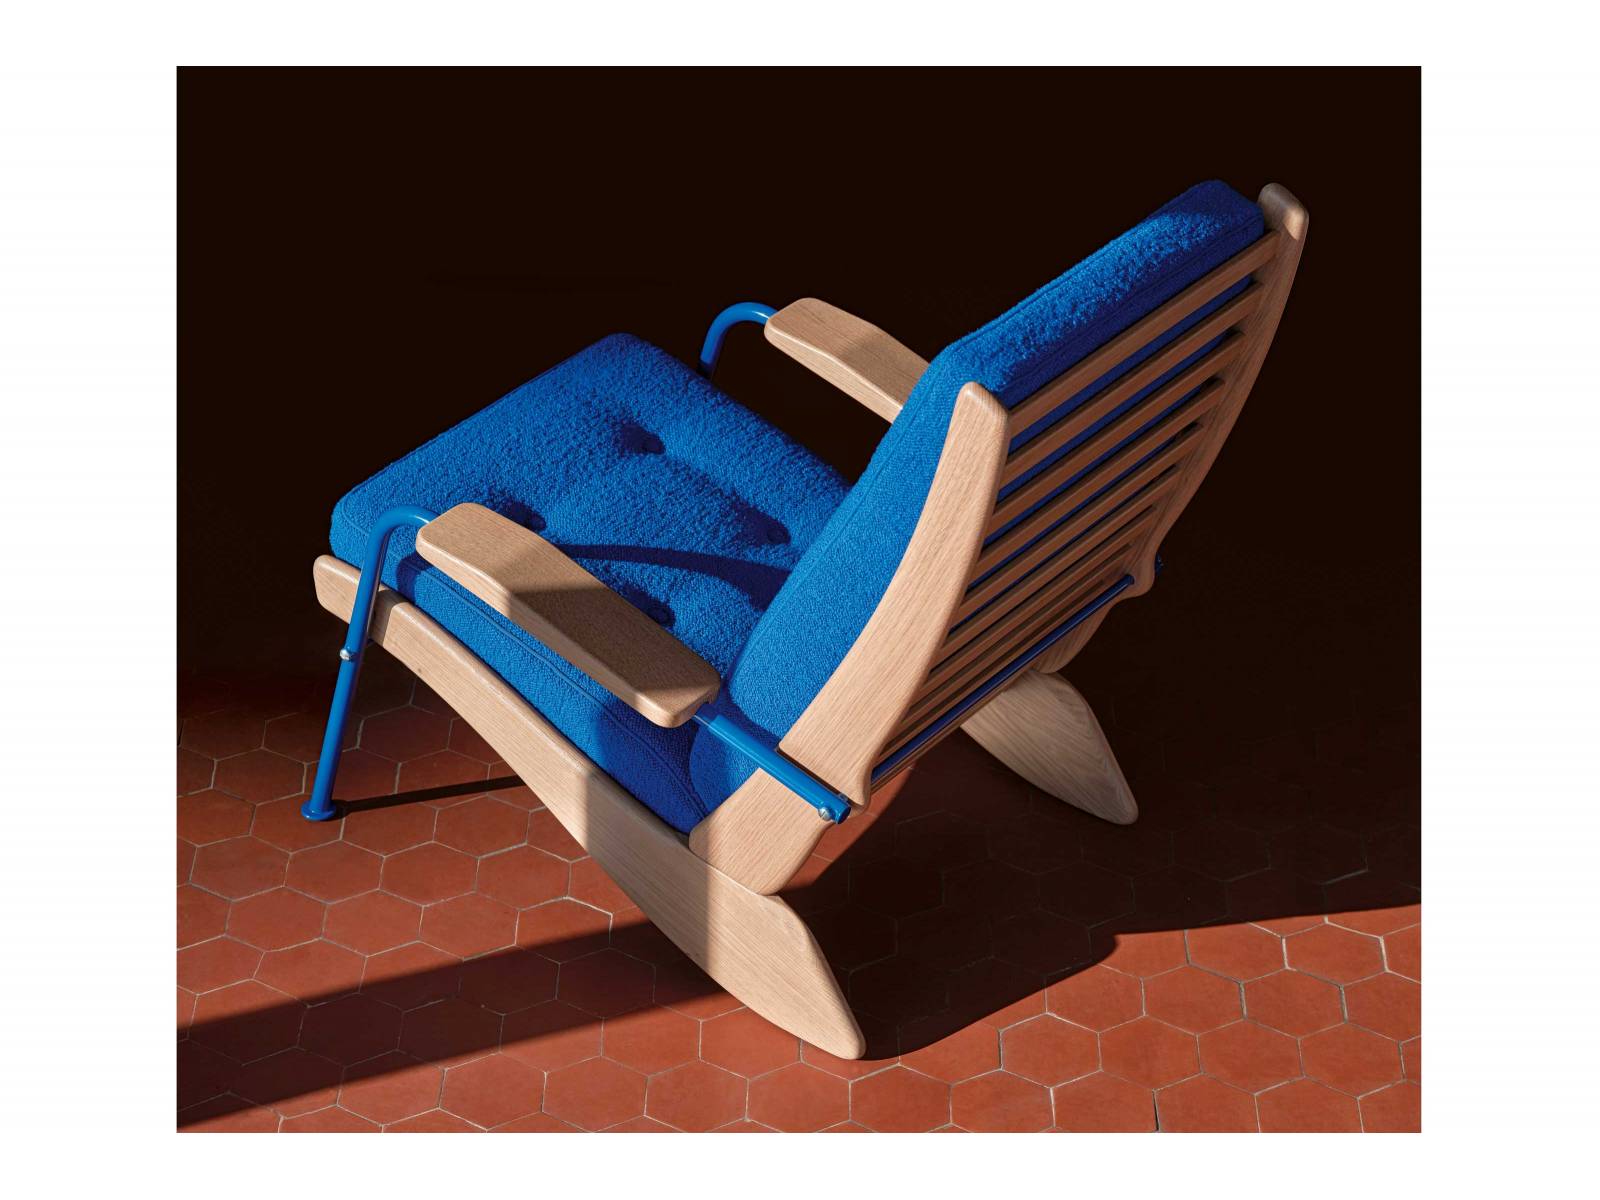 Dass Jean Prouvé seinen Sessel, den er 1948 entwarf, «Kangourou» nannte, beweist Sinn für Humor. Wie sein tierischer Namensgeber verlagert das Sitzmöbel sein Gewicht auf die Hinterbeine und macht es dem darin Sitzenden dadurch besonders bequem. Die neuaufgelegte Variante kombiniert naturfarbene Eiche mit Metallbeinen, während das Polster von einem weich gewebten Bouclé-Stoff umhüllt ist. VITRA.